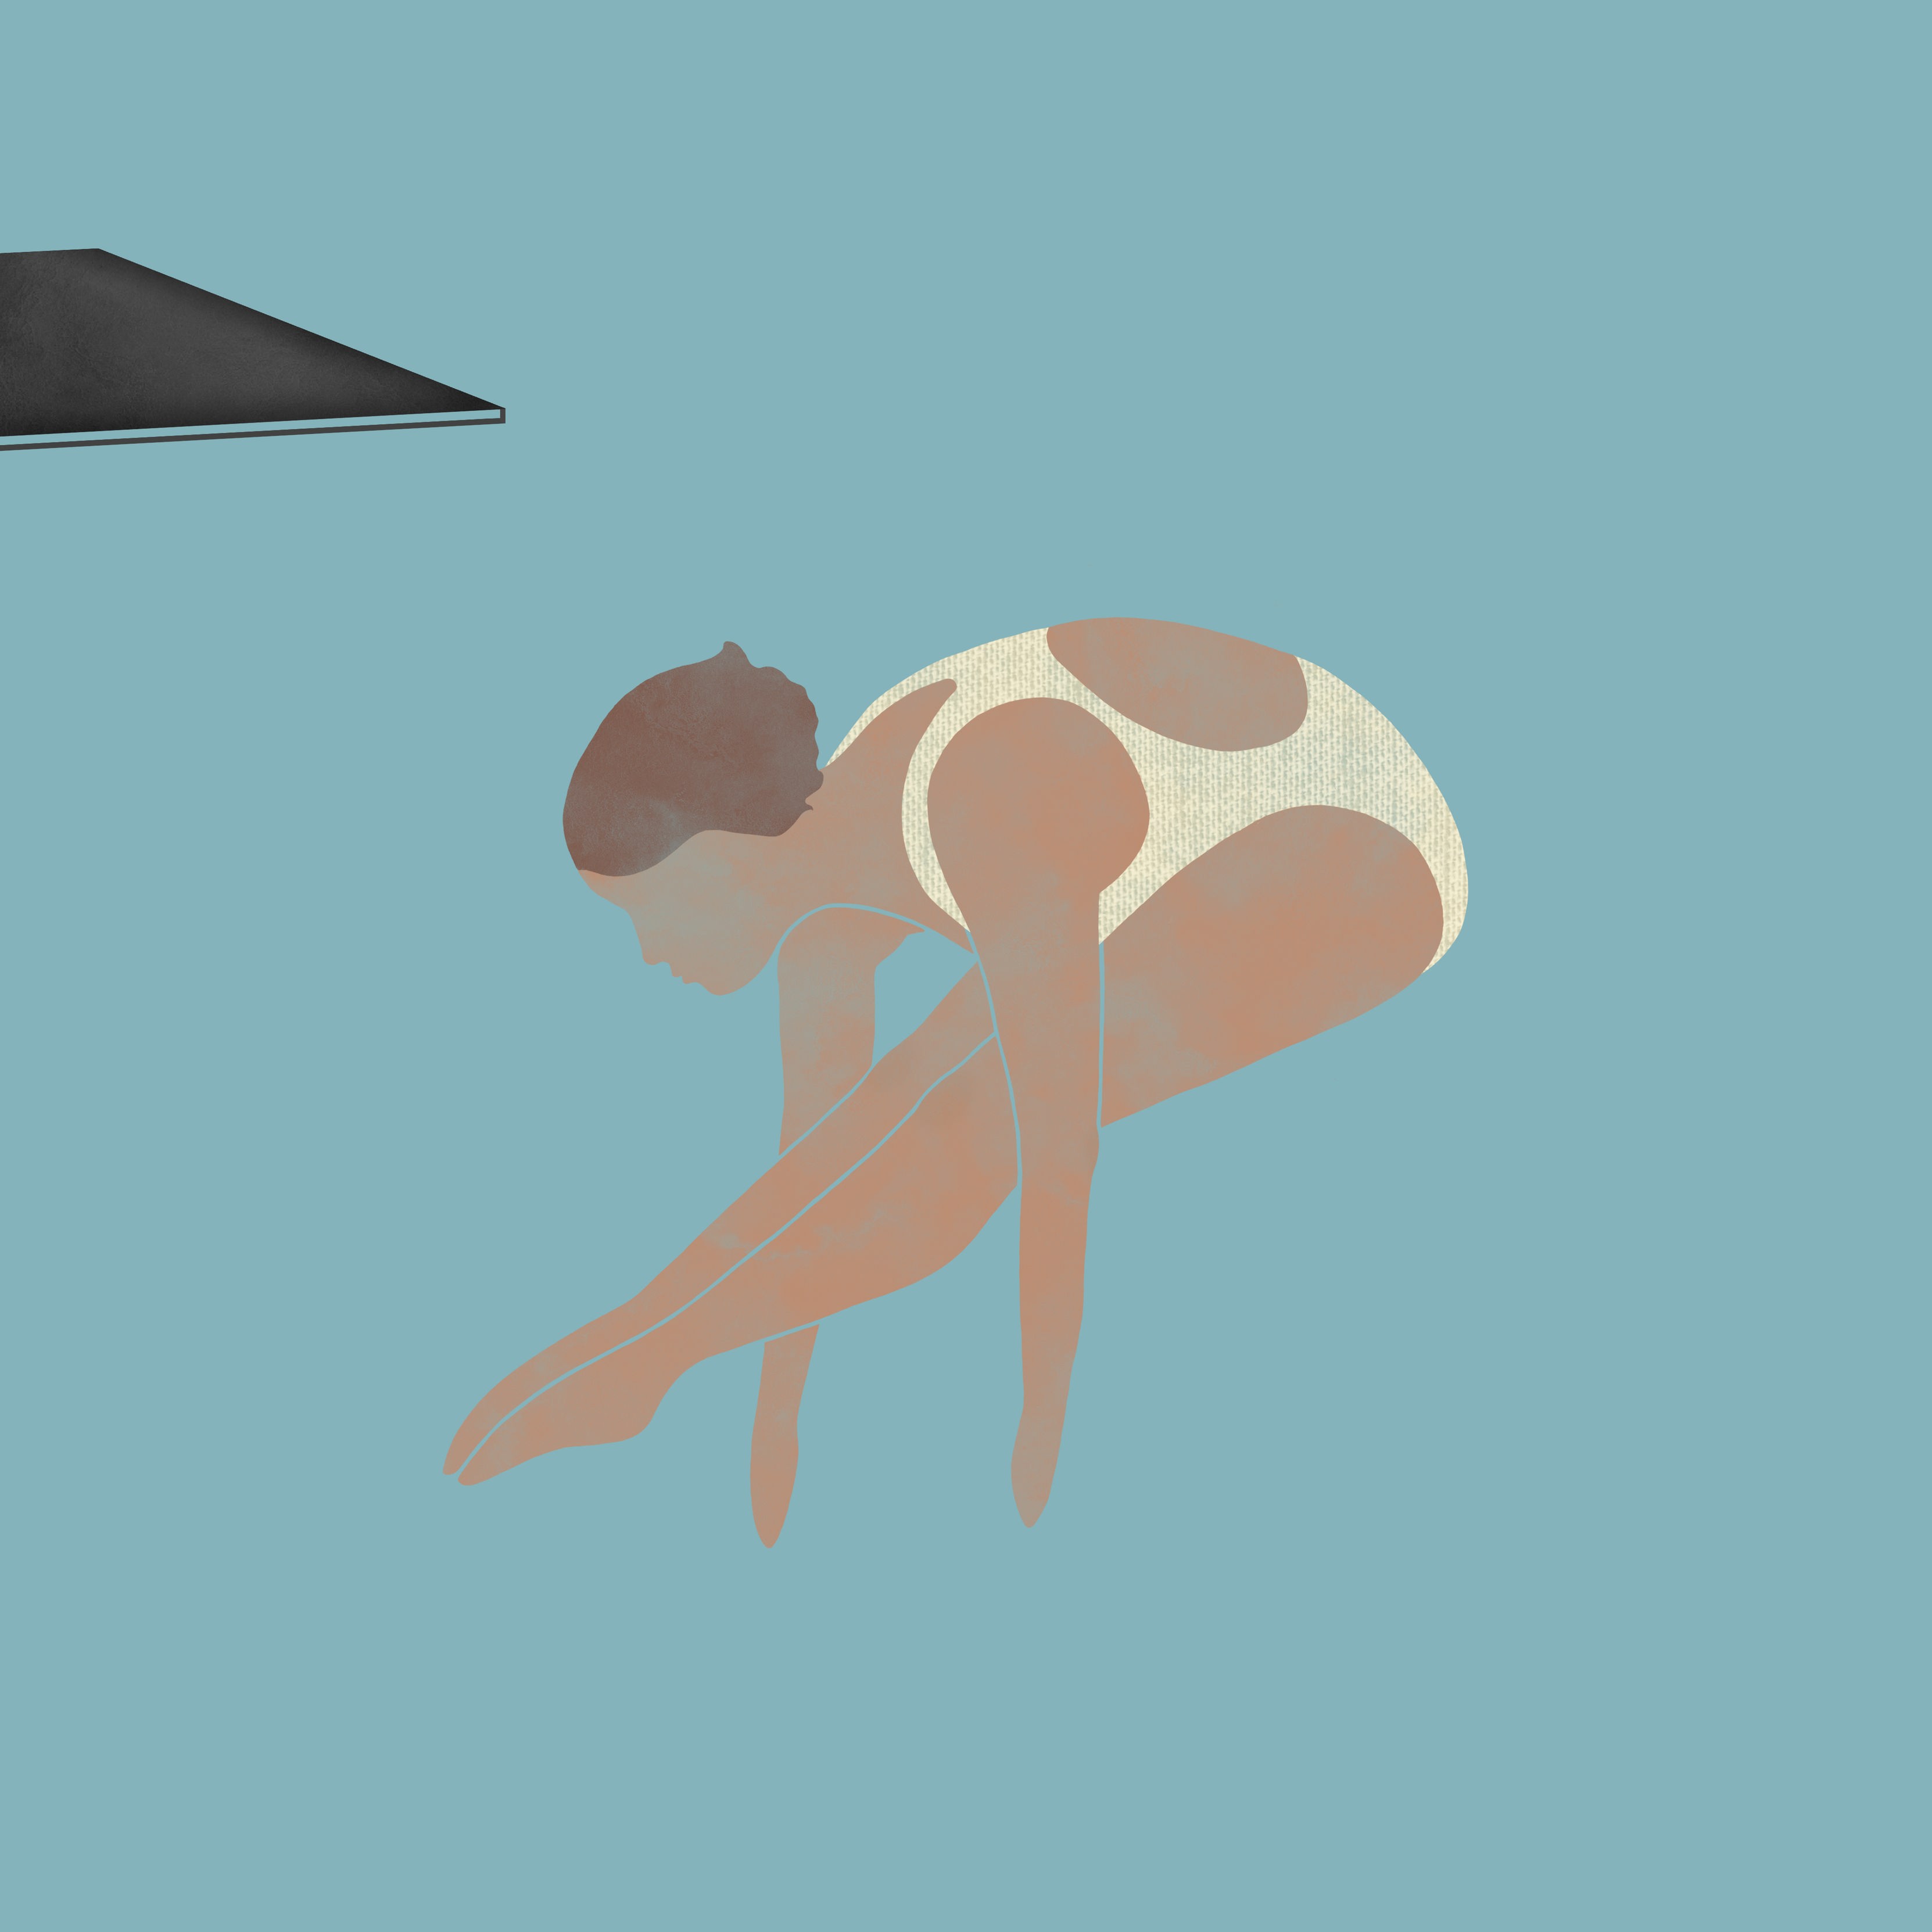 Die Turmspringerinnen: Die Zeichnung zur Episode 4 des Podcasts zeigt eine Turmspringerin mit angewinkelten Beinen in der Luft nach dem Absprung vom Brett.